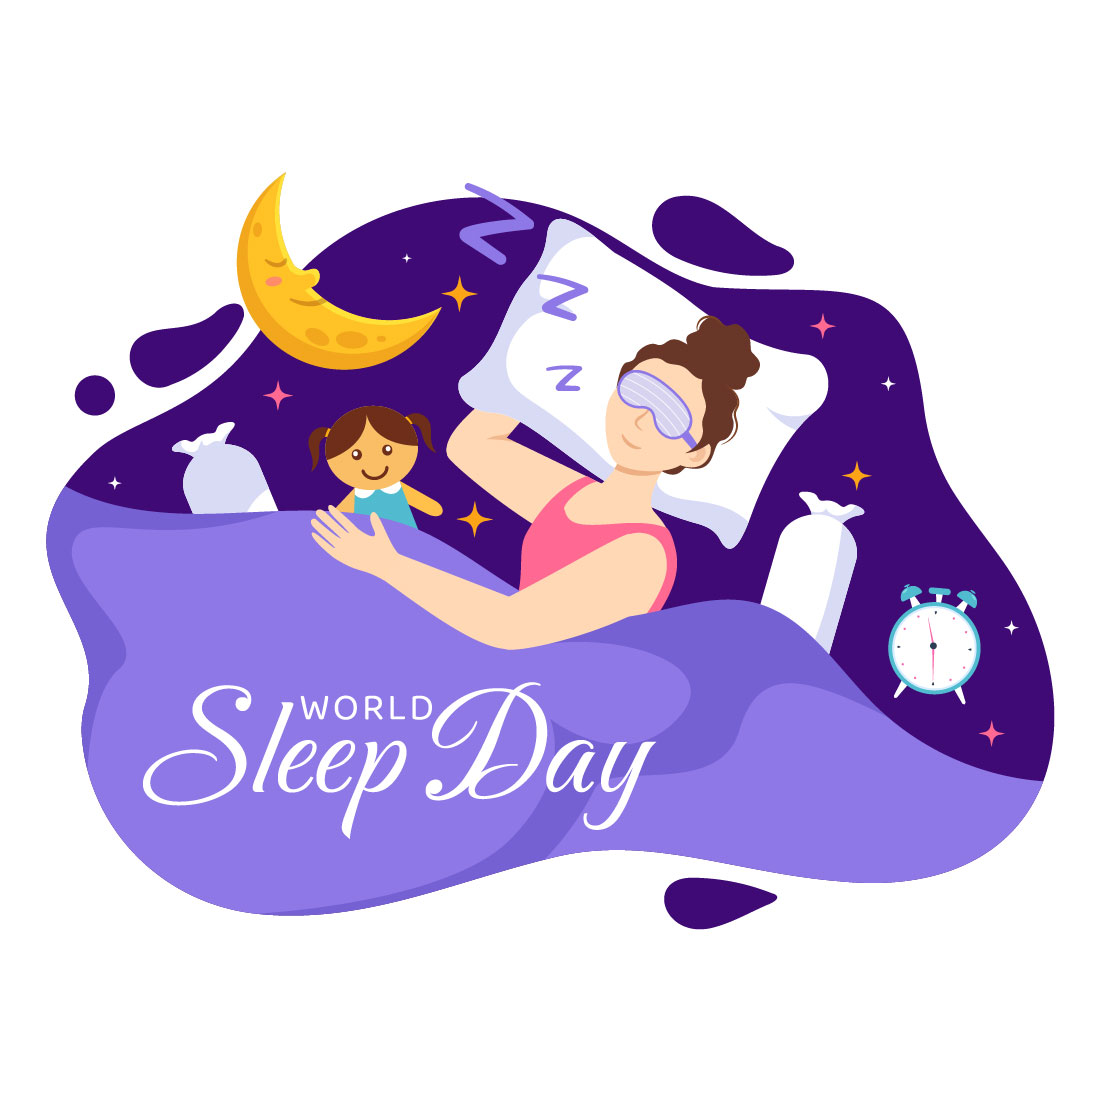 12 World Sleep Day Illustration cover image.